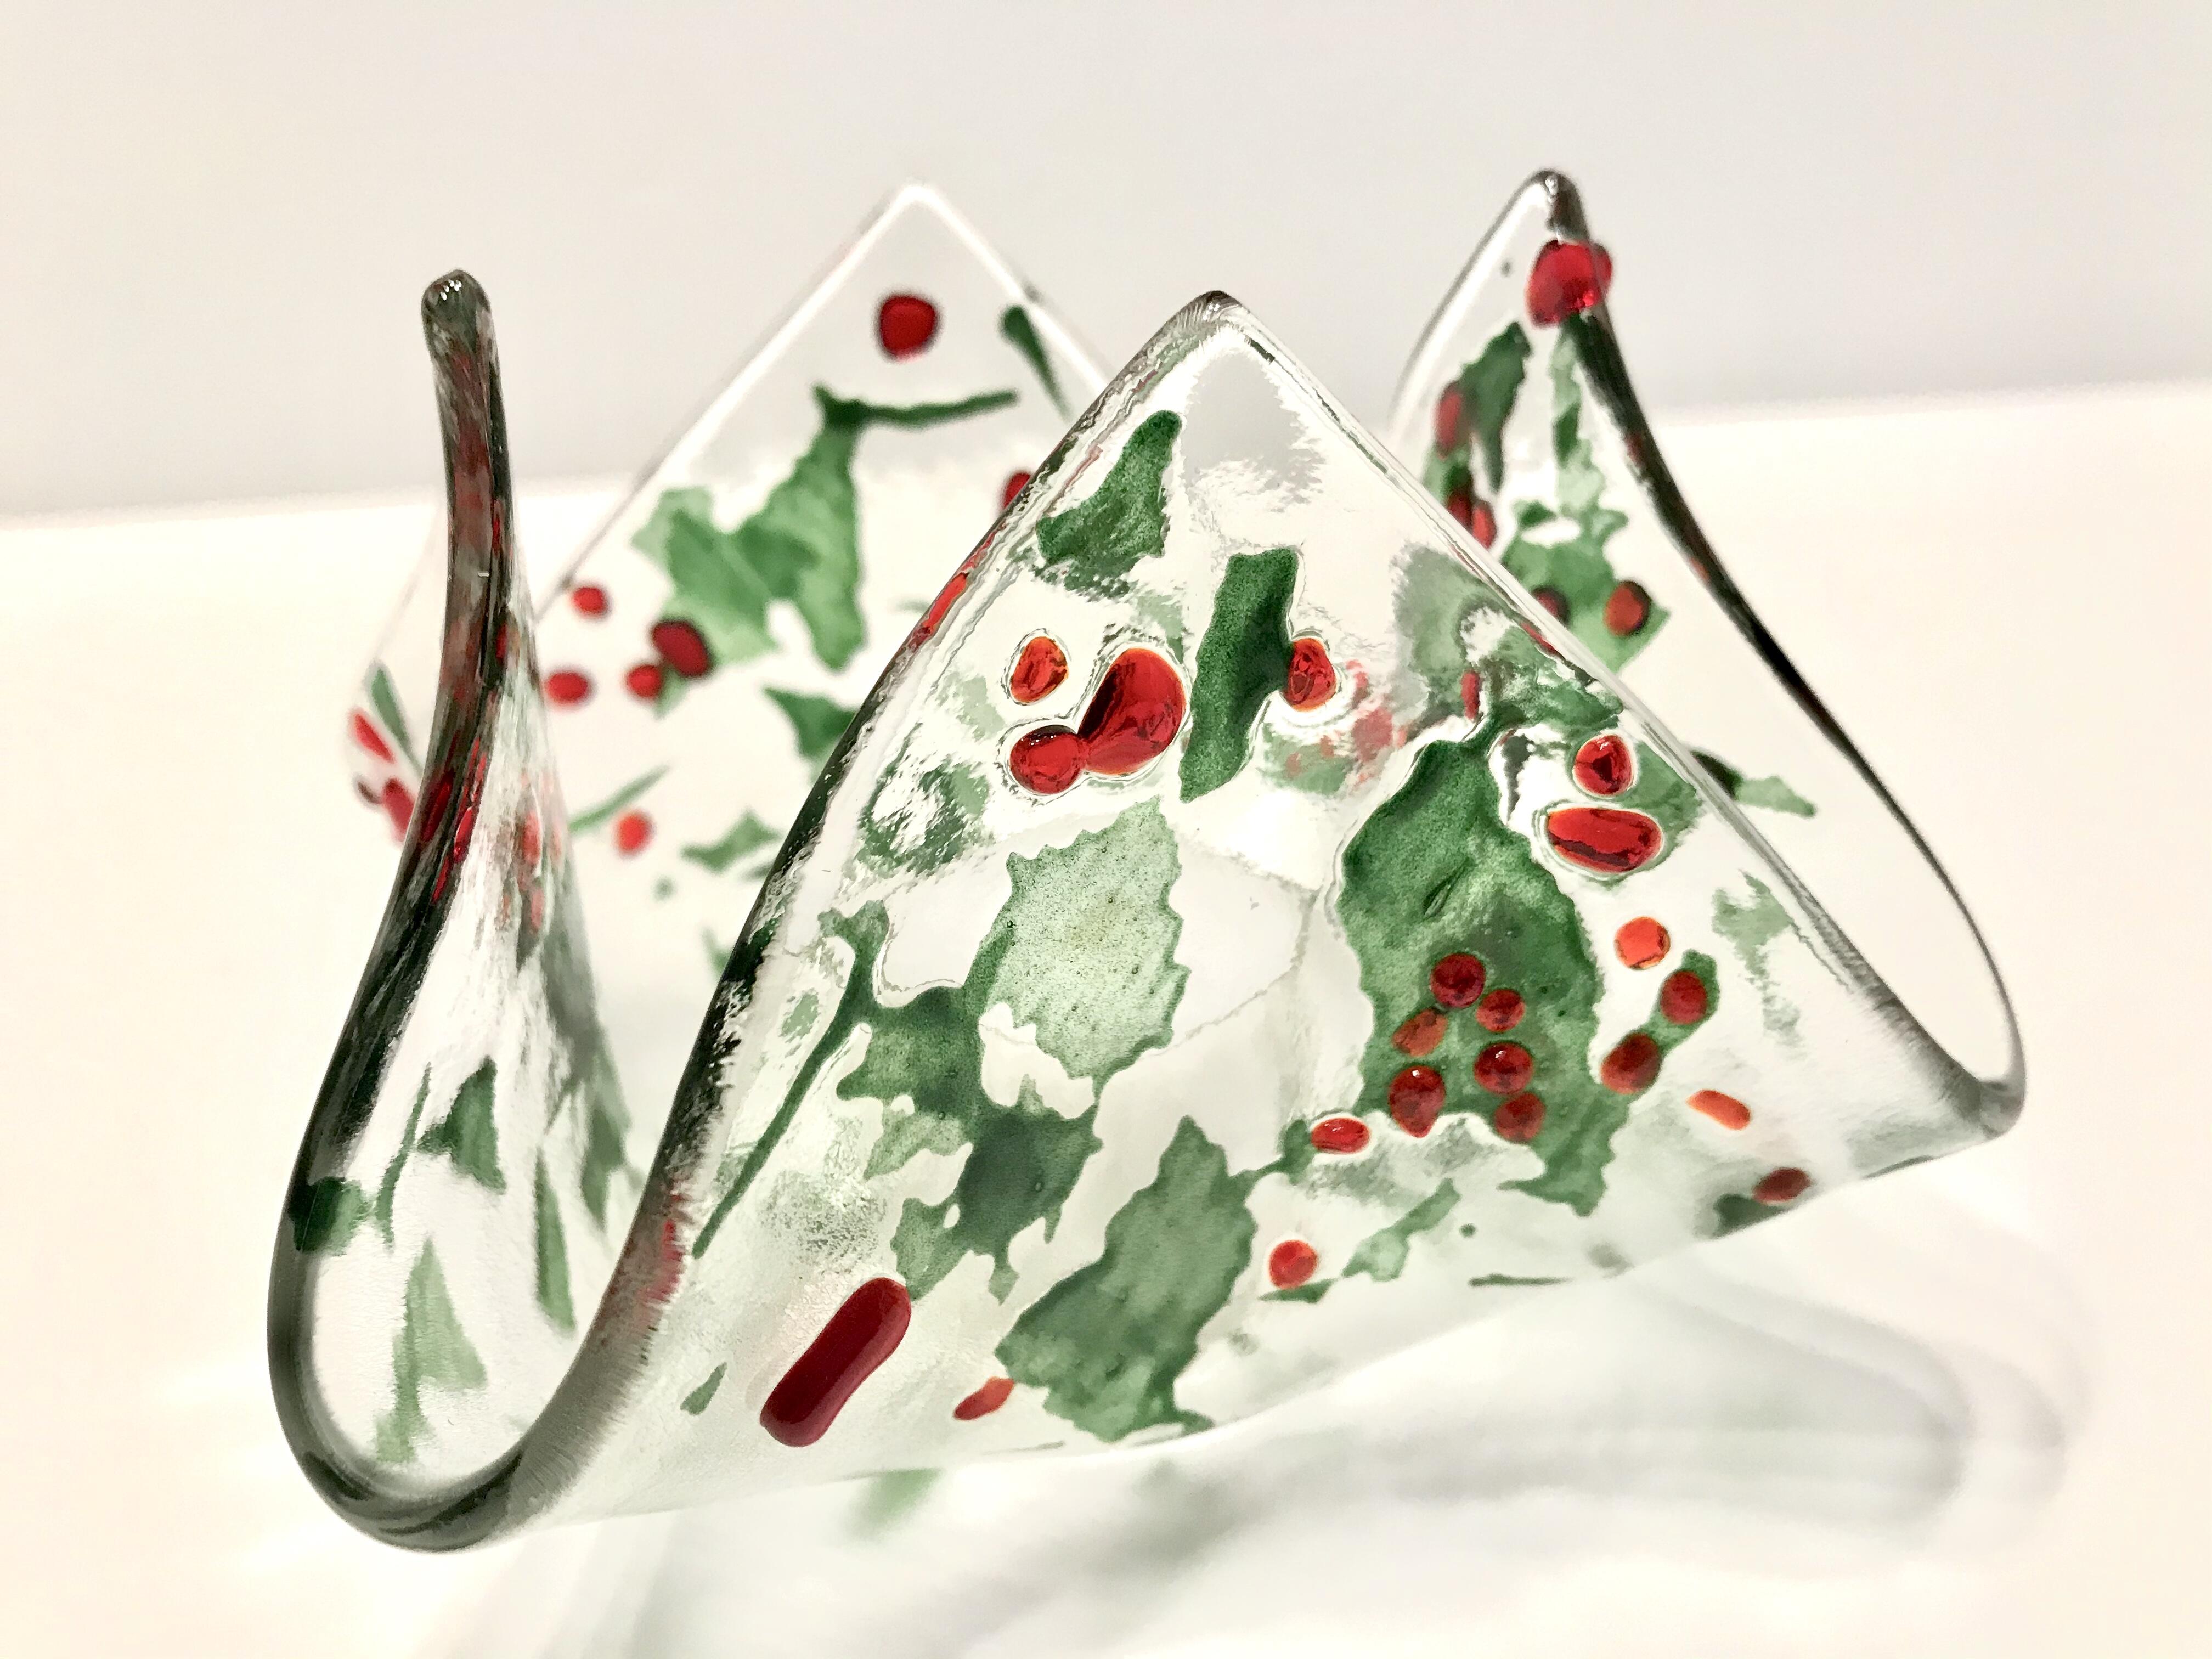 Bougie à réchaud en verre transparent, avec des reflets verts/rouges